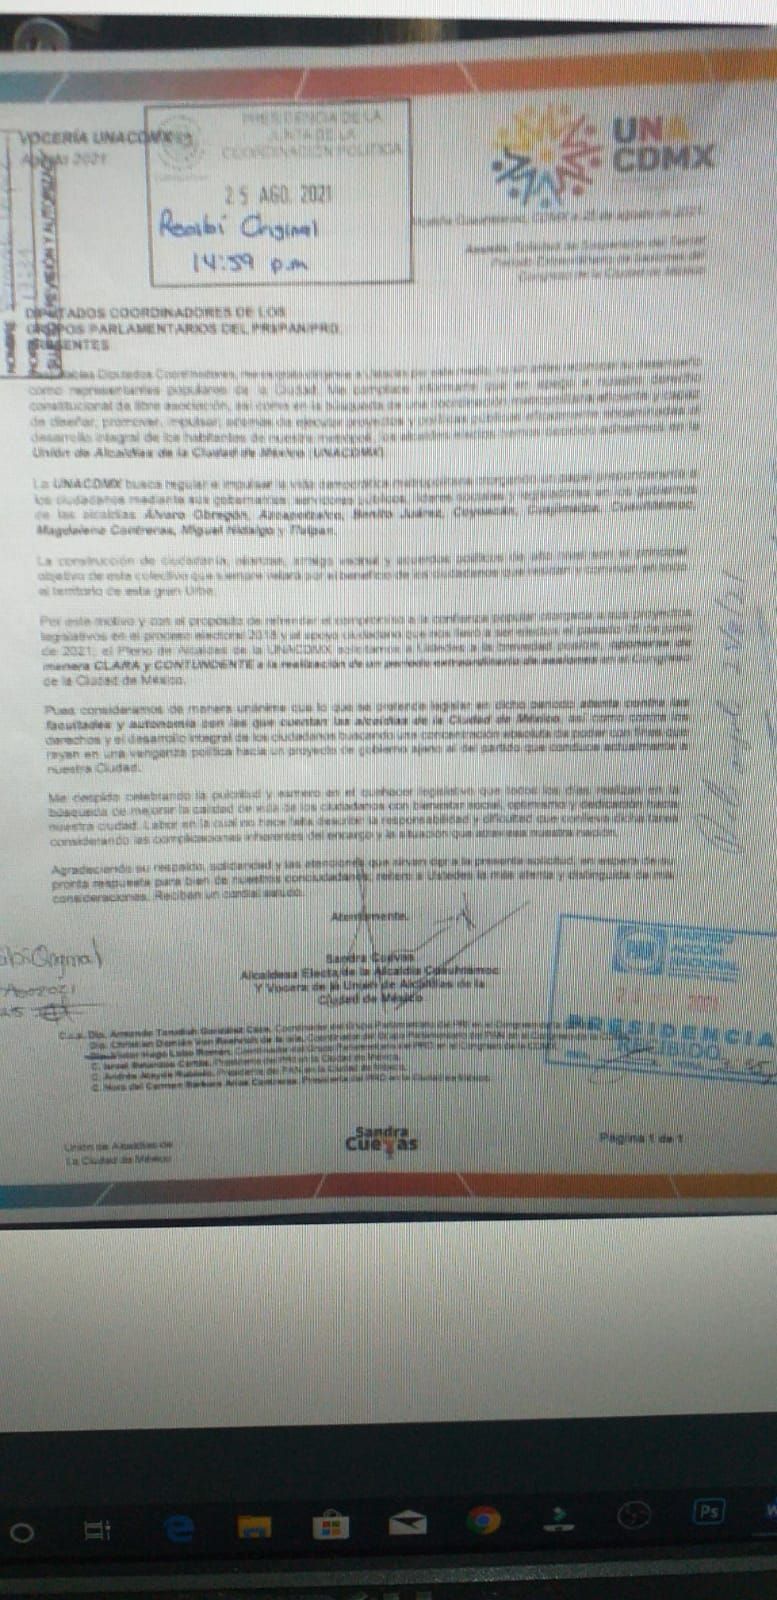 #Unión de alcaldes de la CDMX pide suspender periodo extraordinario de sesiones en el congreso local